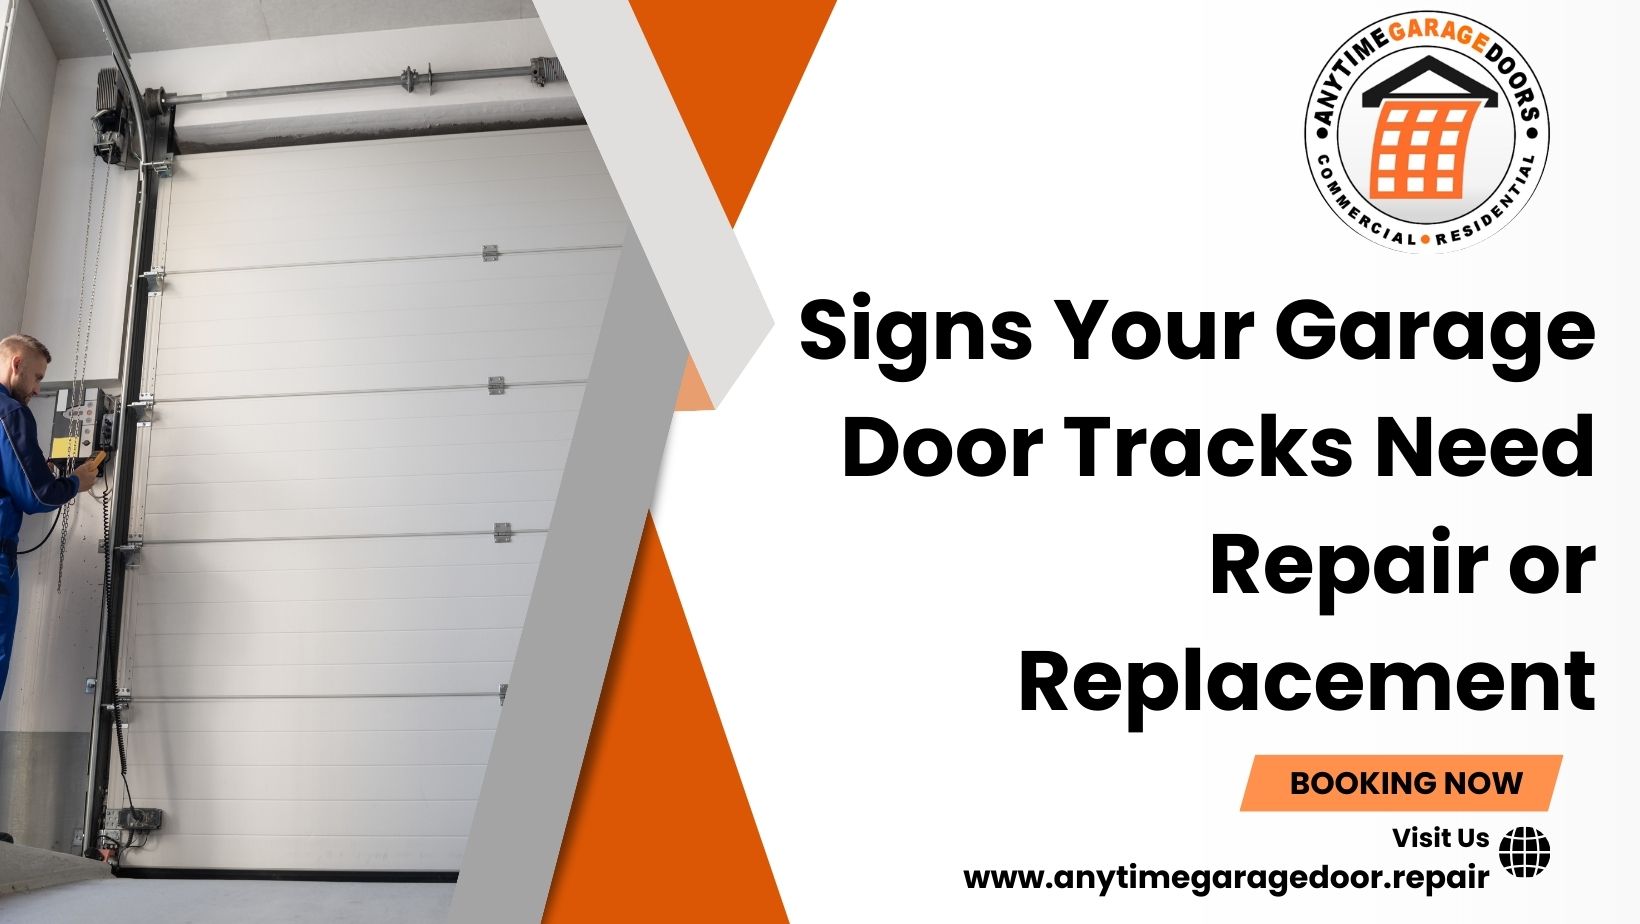 Signs Your Garage Door Tracks Need Repair or Replacement - Anytimegaragedoor